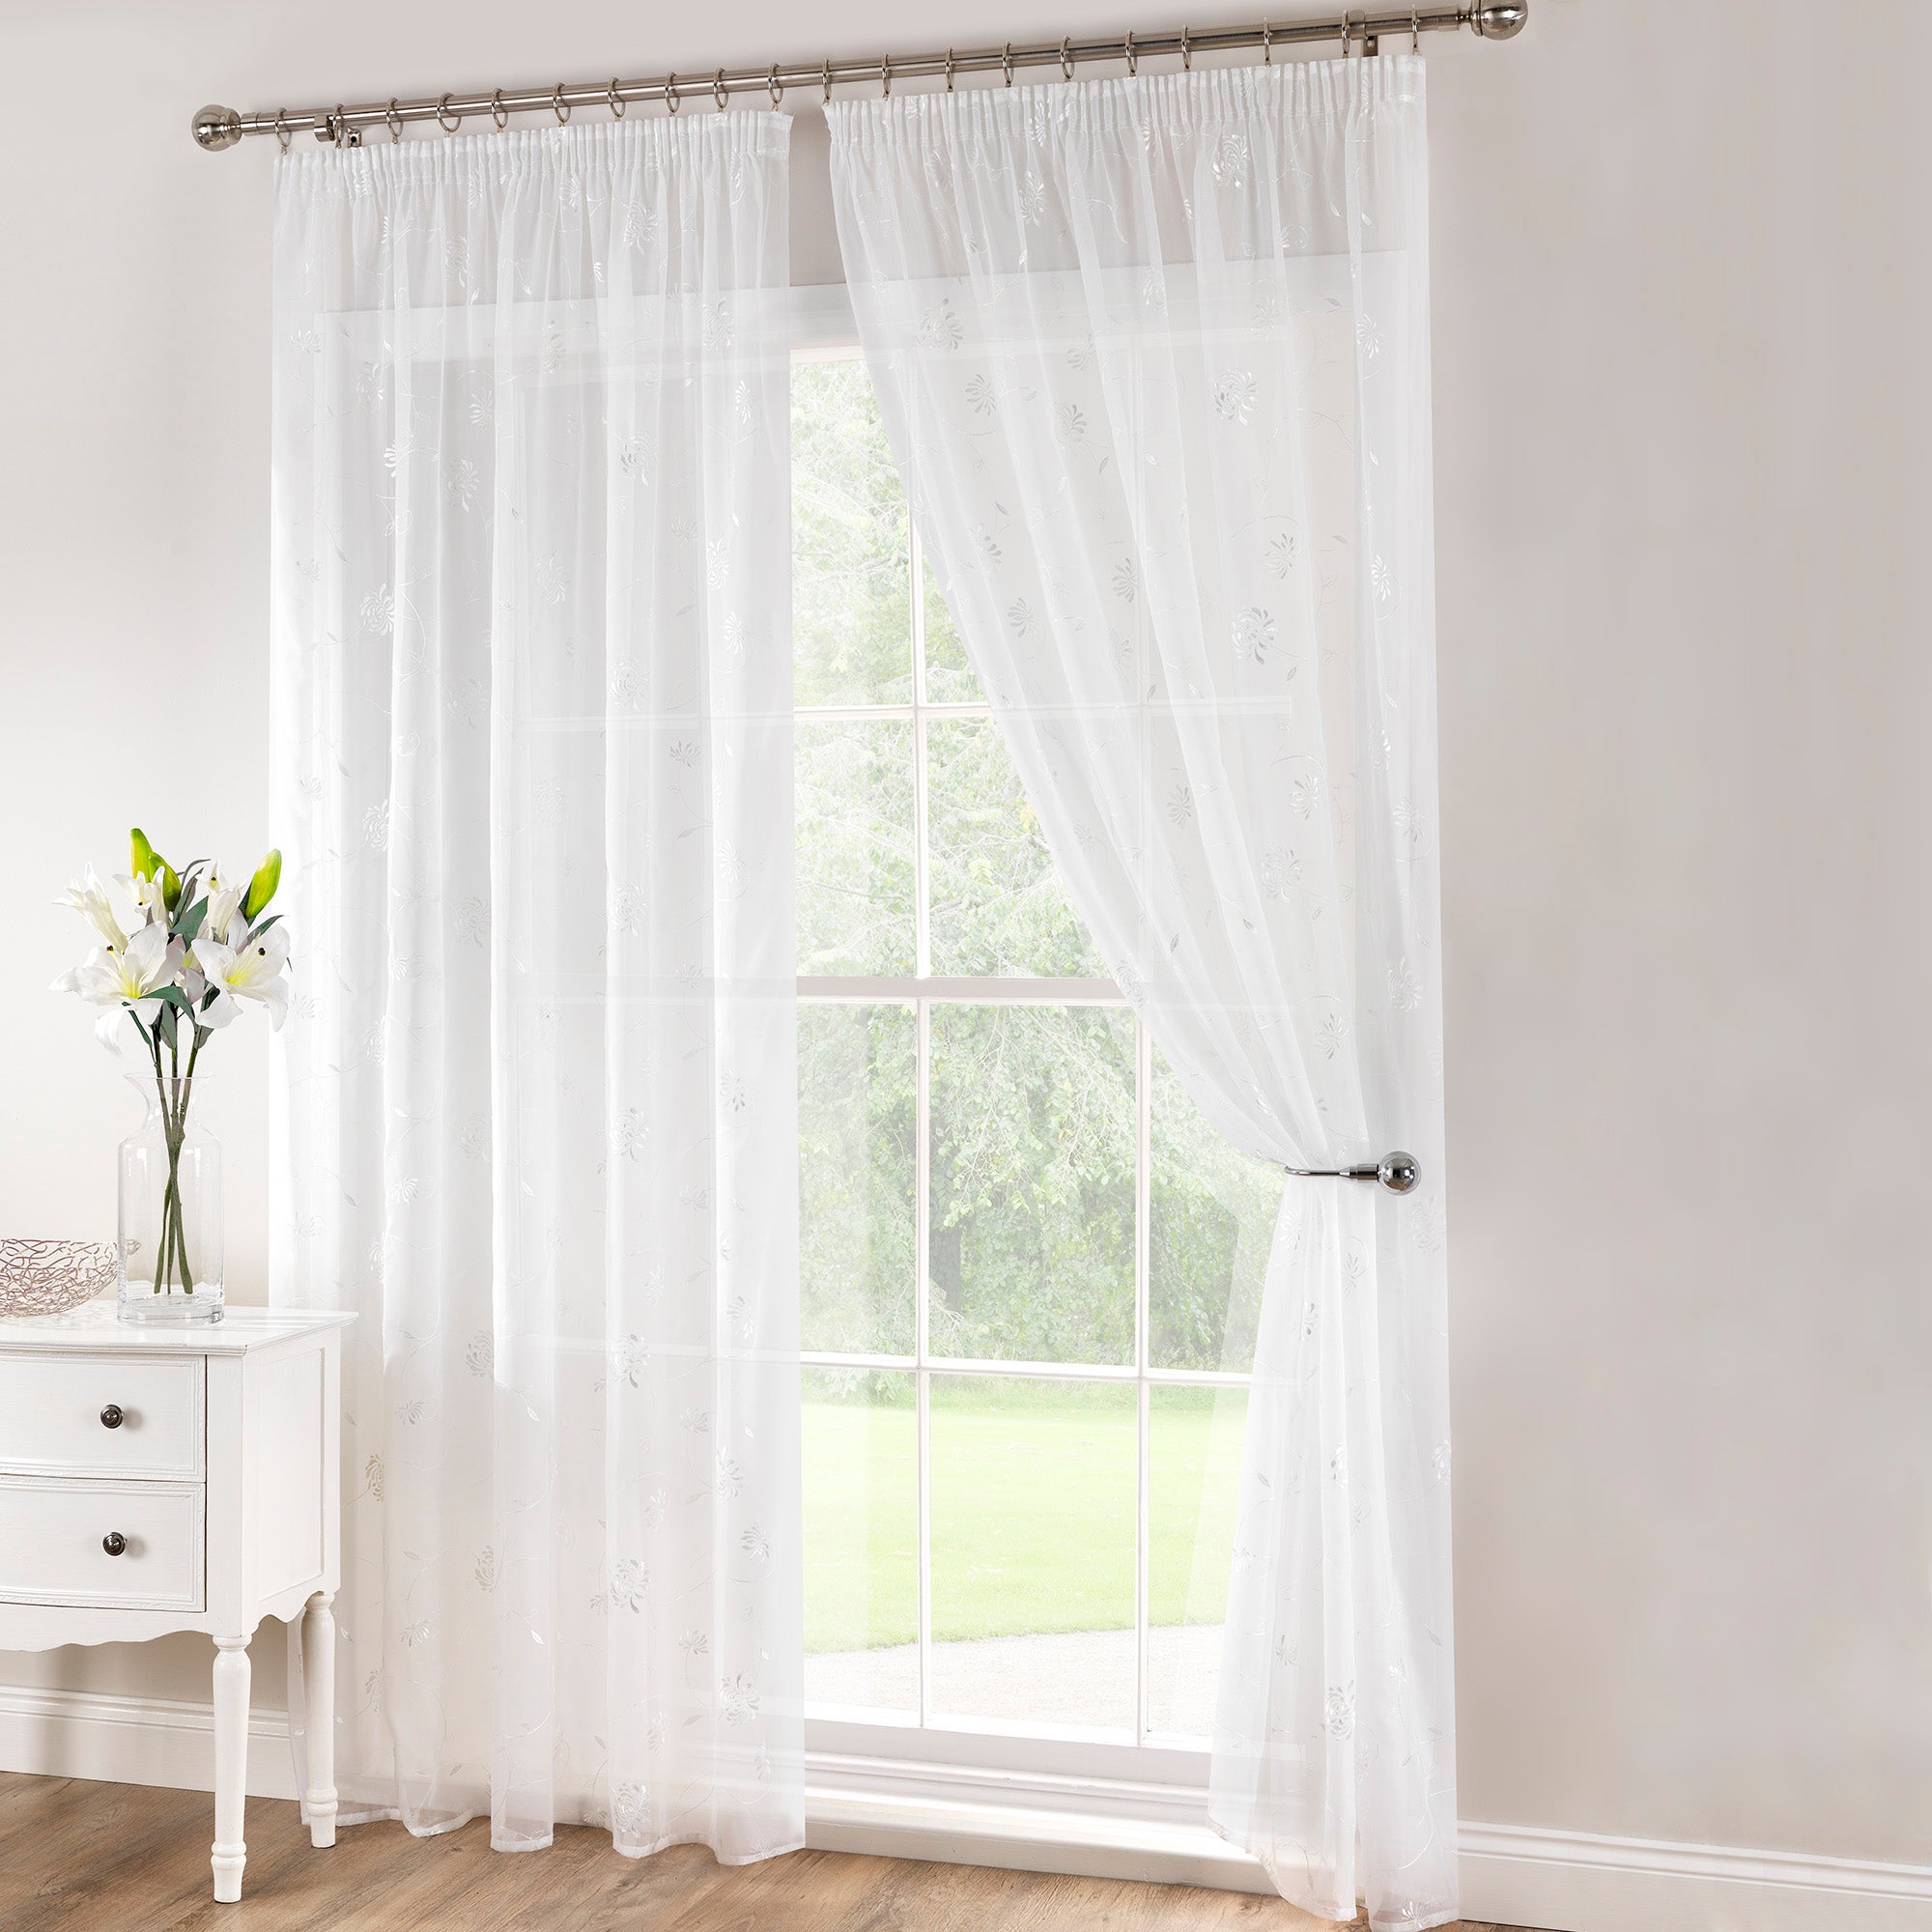 Voile & Net Curtains | Voile Panels & Lace Curtains | Dunelm